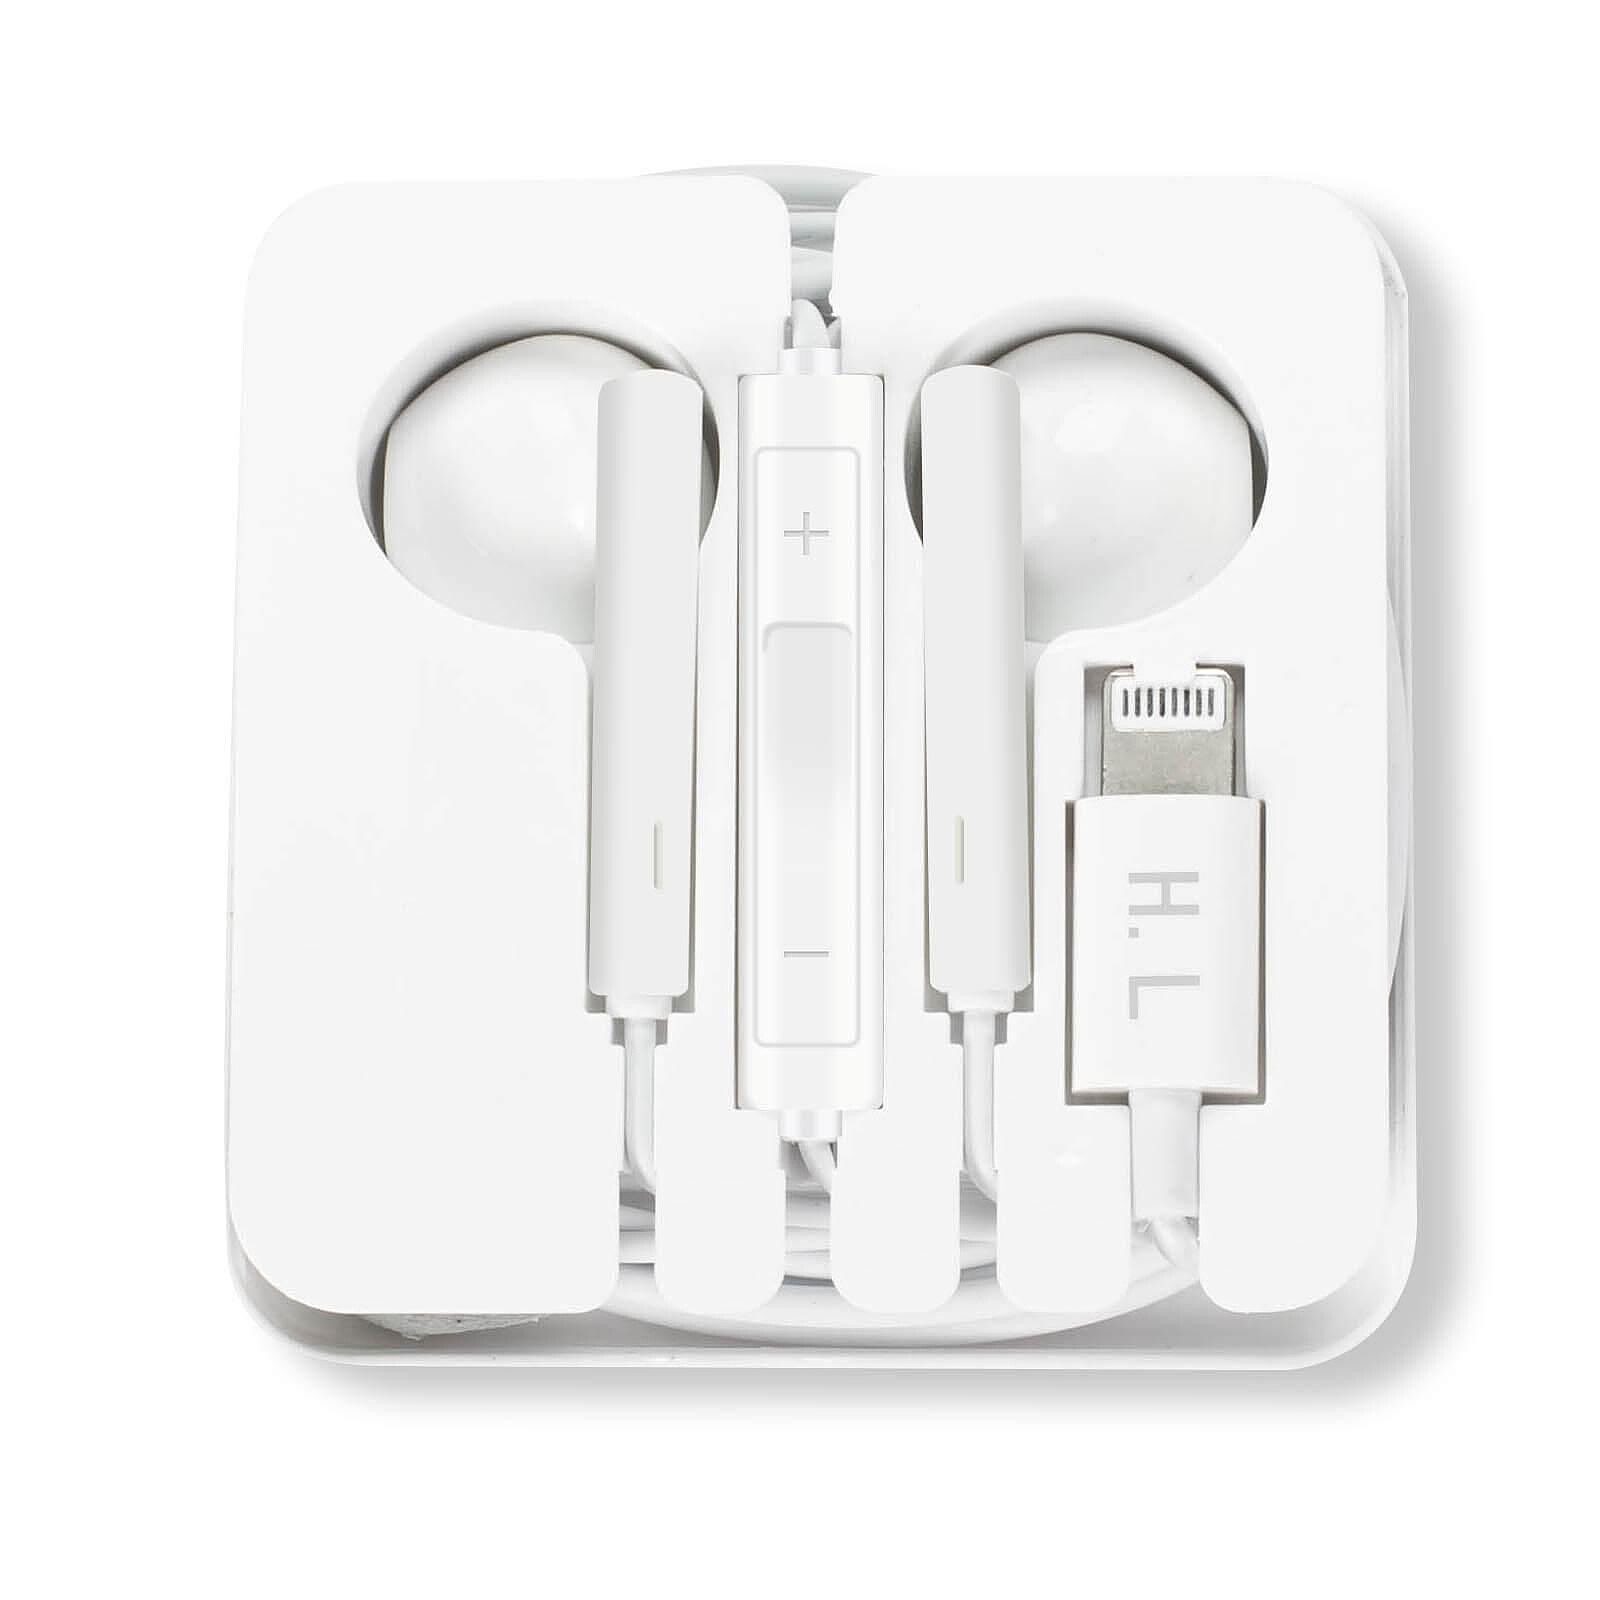 Ecouteurs filaire avec microphone pour iPhone - Blanc sur